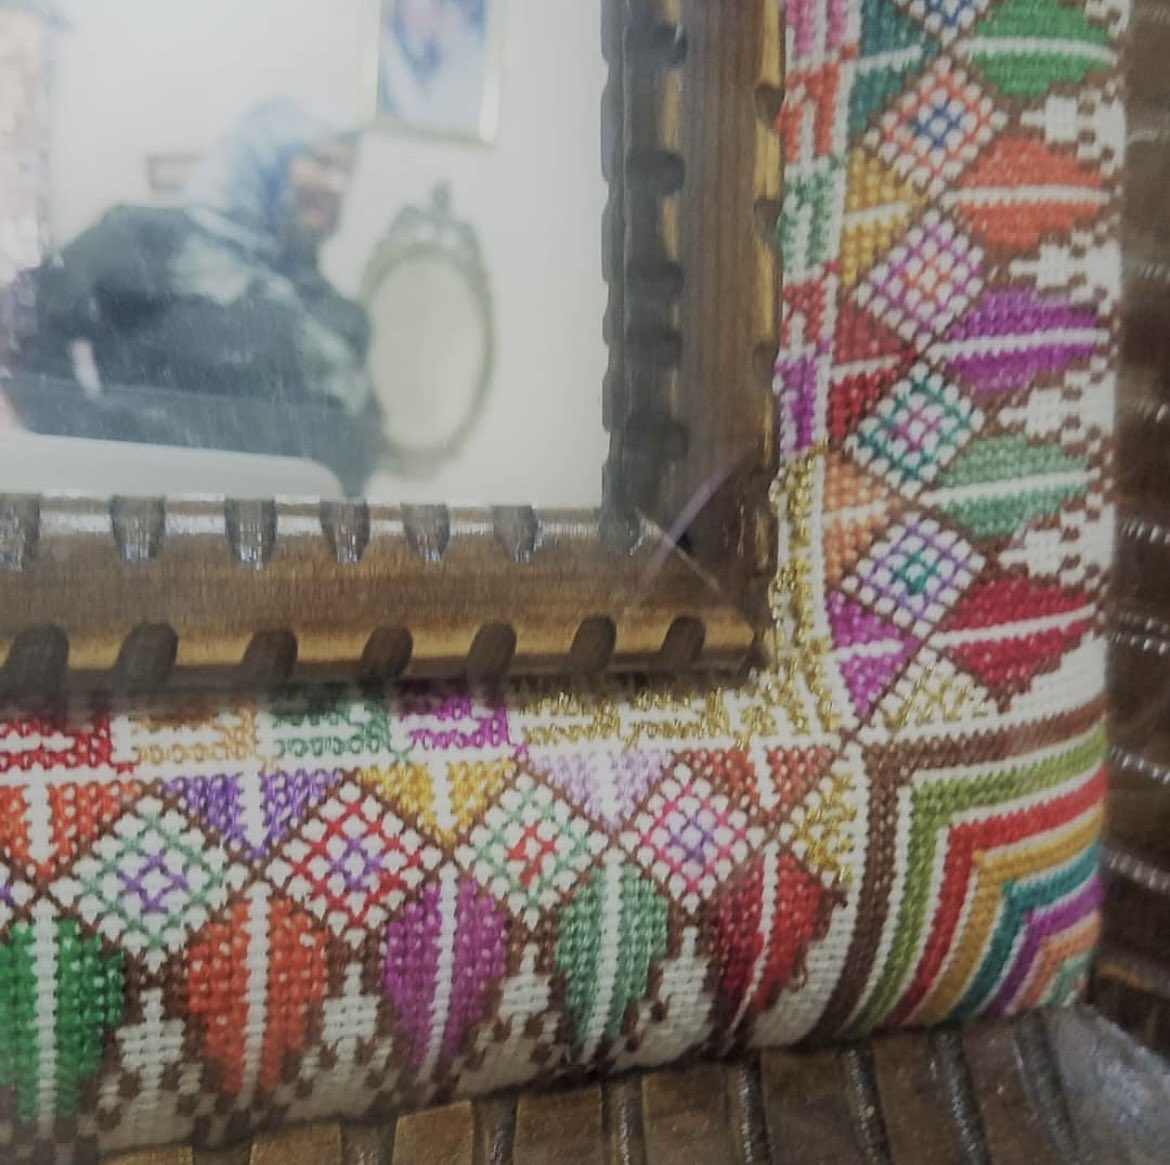 パレスチナ刺繍キット「糸杉とベツレヘムの星〜ハディージャさんのミラーフレームより」、好評です。 西岸アイン•キーニア村のハディージャさん（故人）のお家のミラーフレームより、デザインおこしました。 3,300円（税込）、送料650円